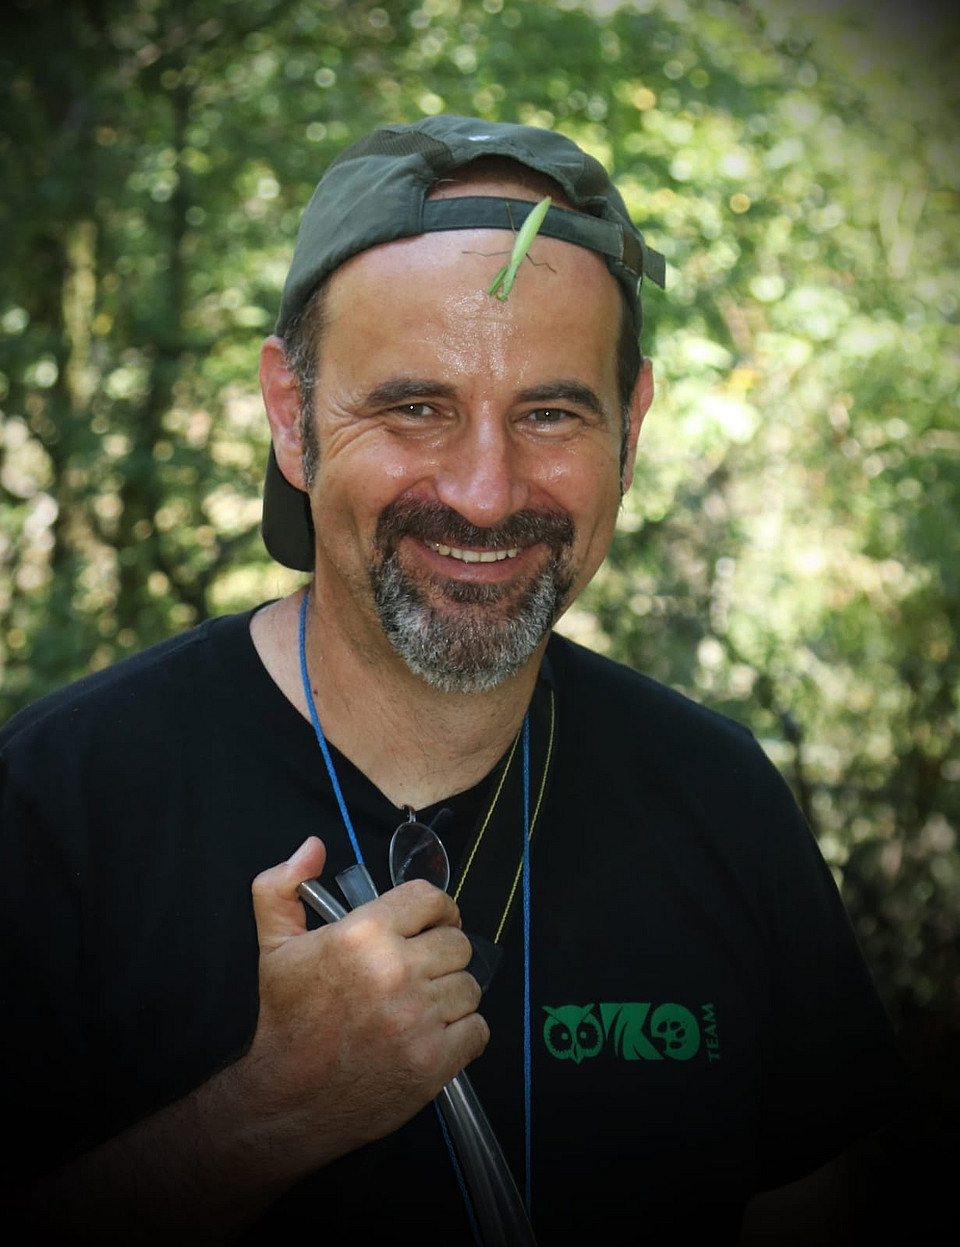 Aufnahme von Werner Holzinger, lachend, mit Kappe im Freien; auf seiner Stirn sitzt ein längliches grünes Insekt.